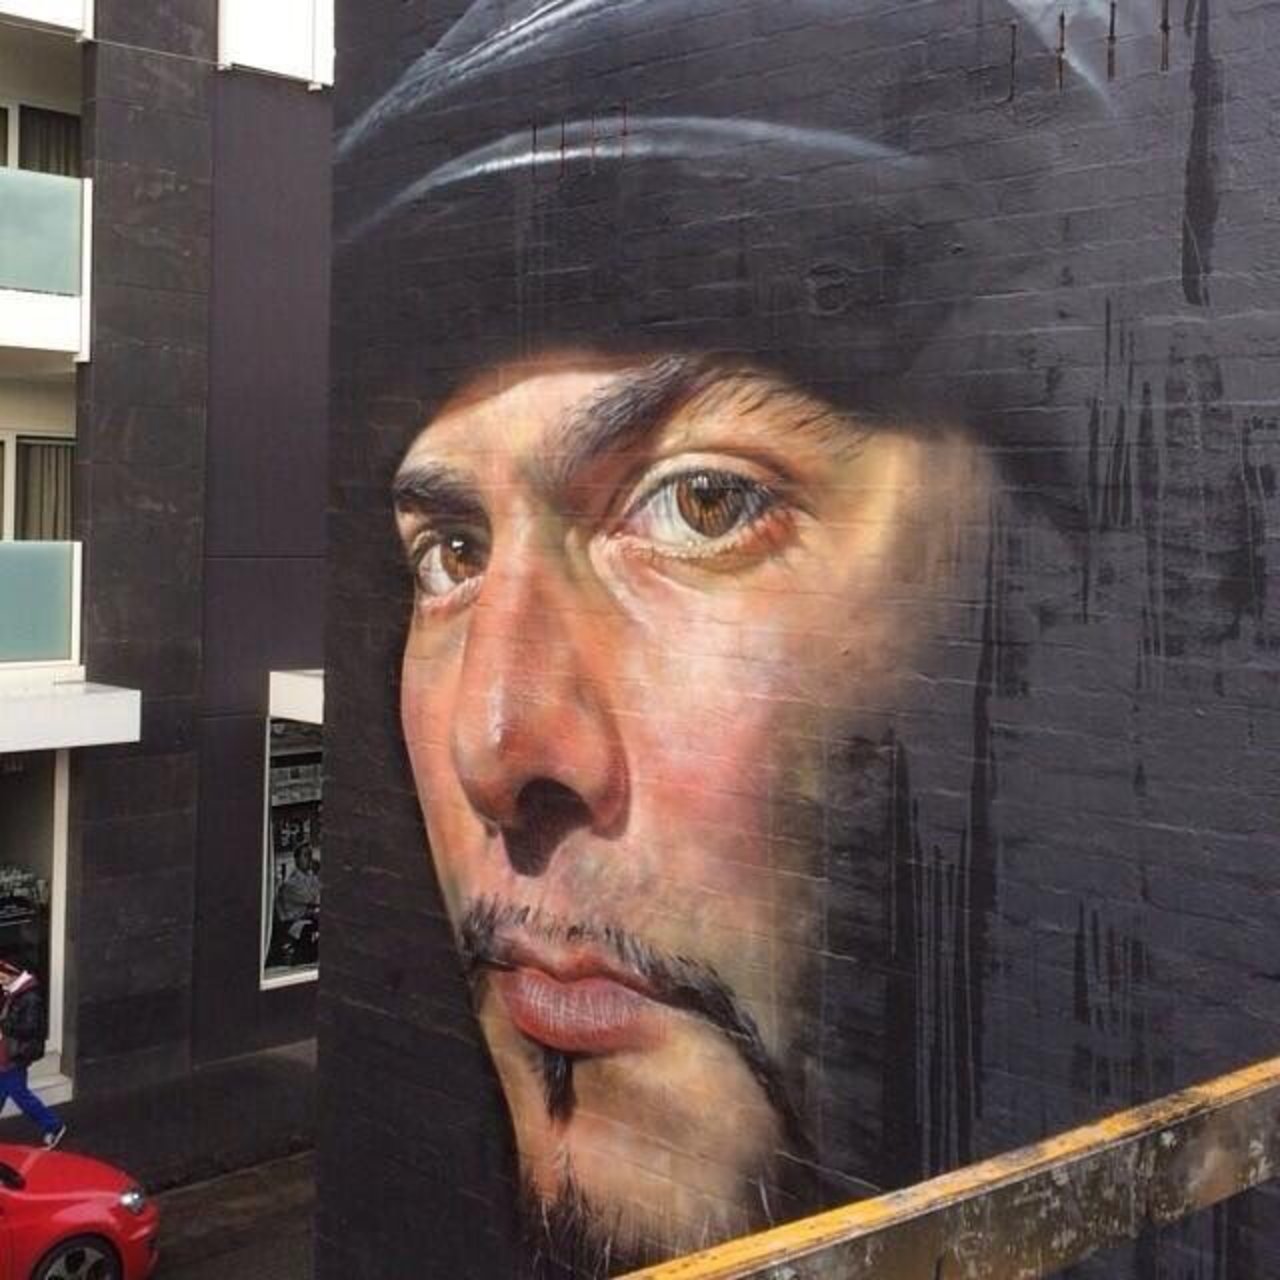 #mural by Adnate #Melbourne #Australia #art #graffiti #streetart #urbanart https://t.co/sqlYp7dl5O